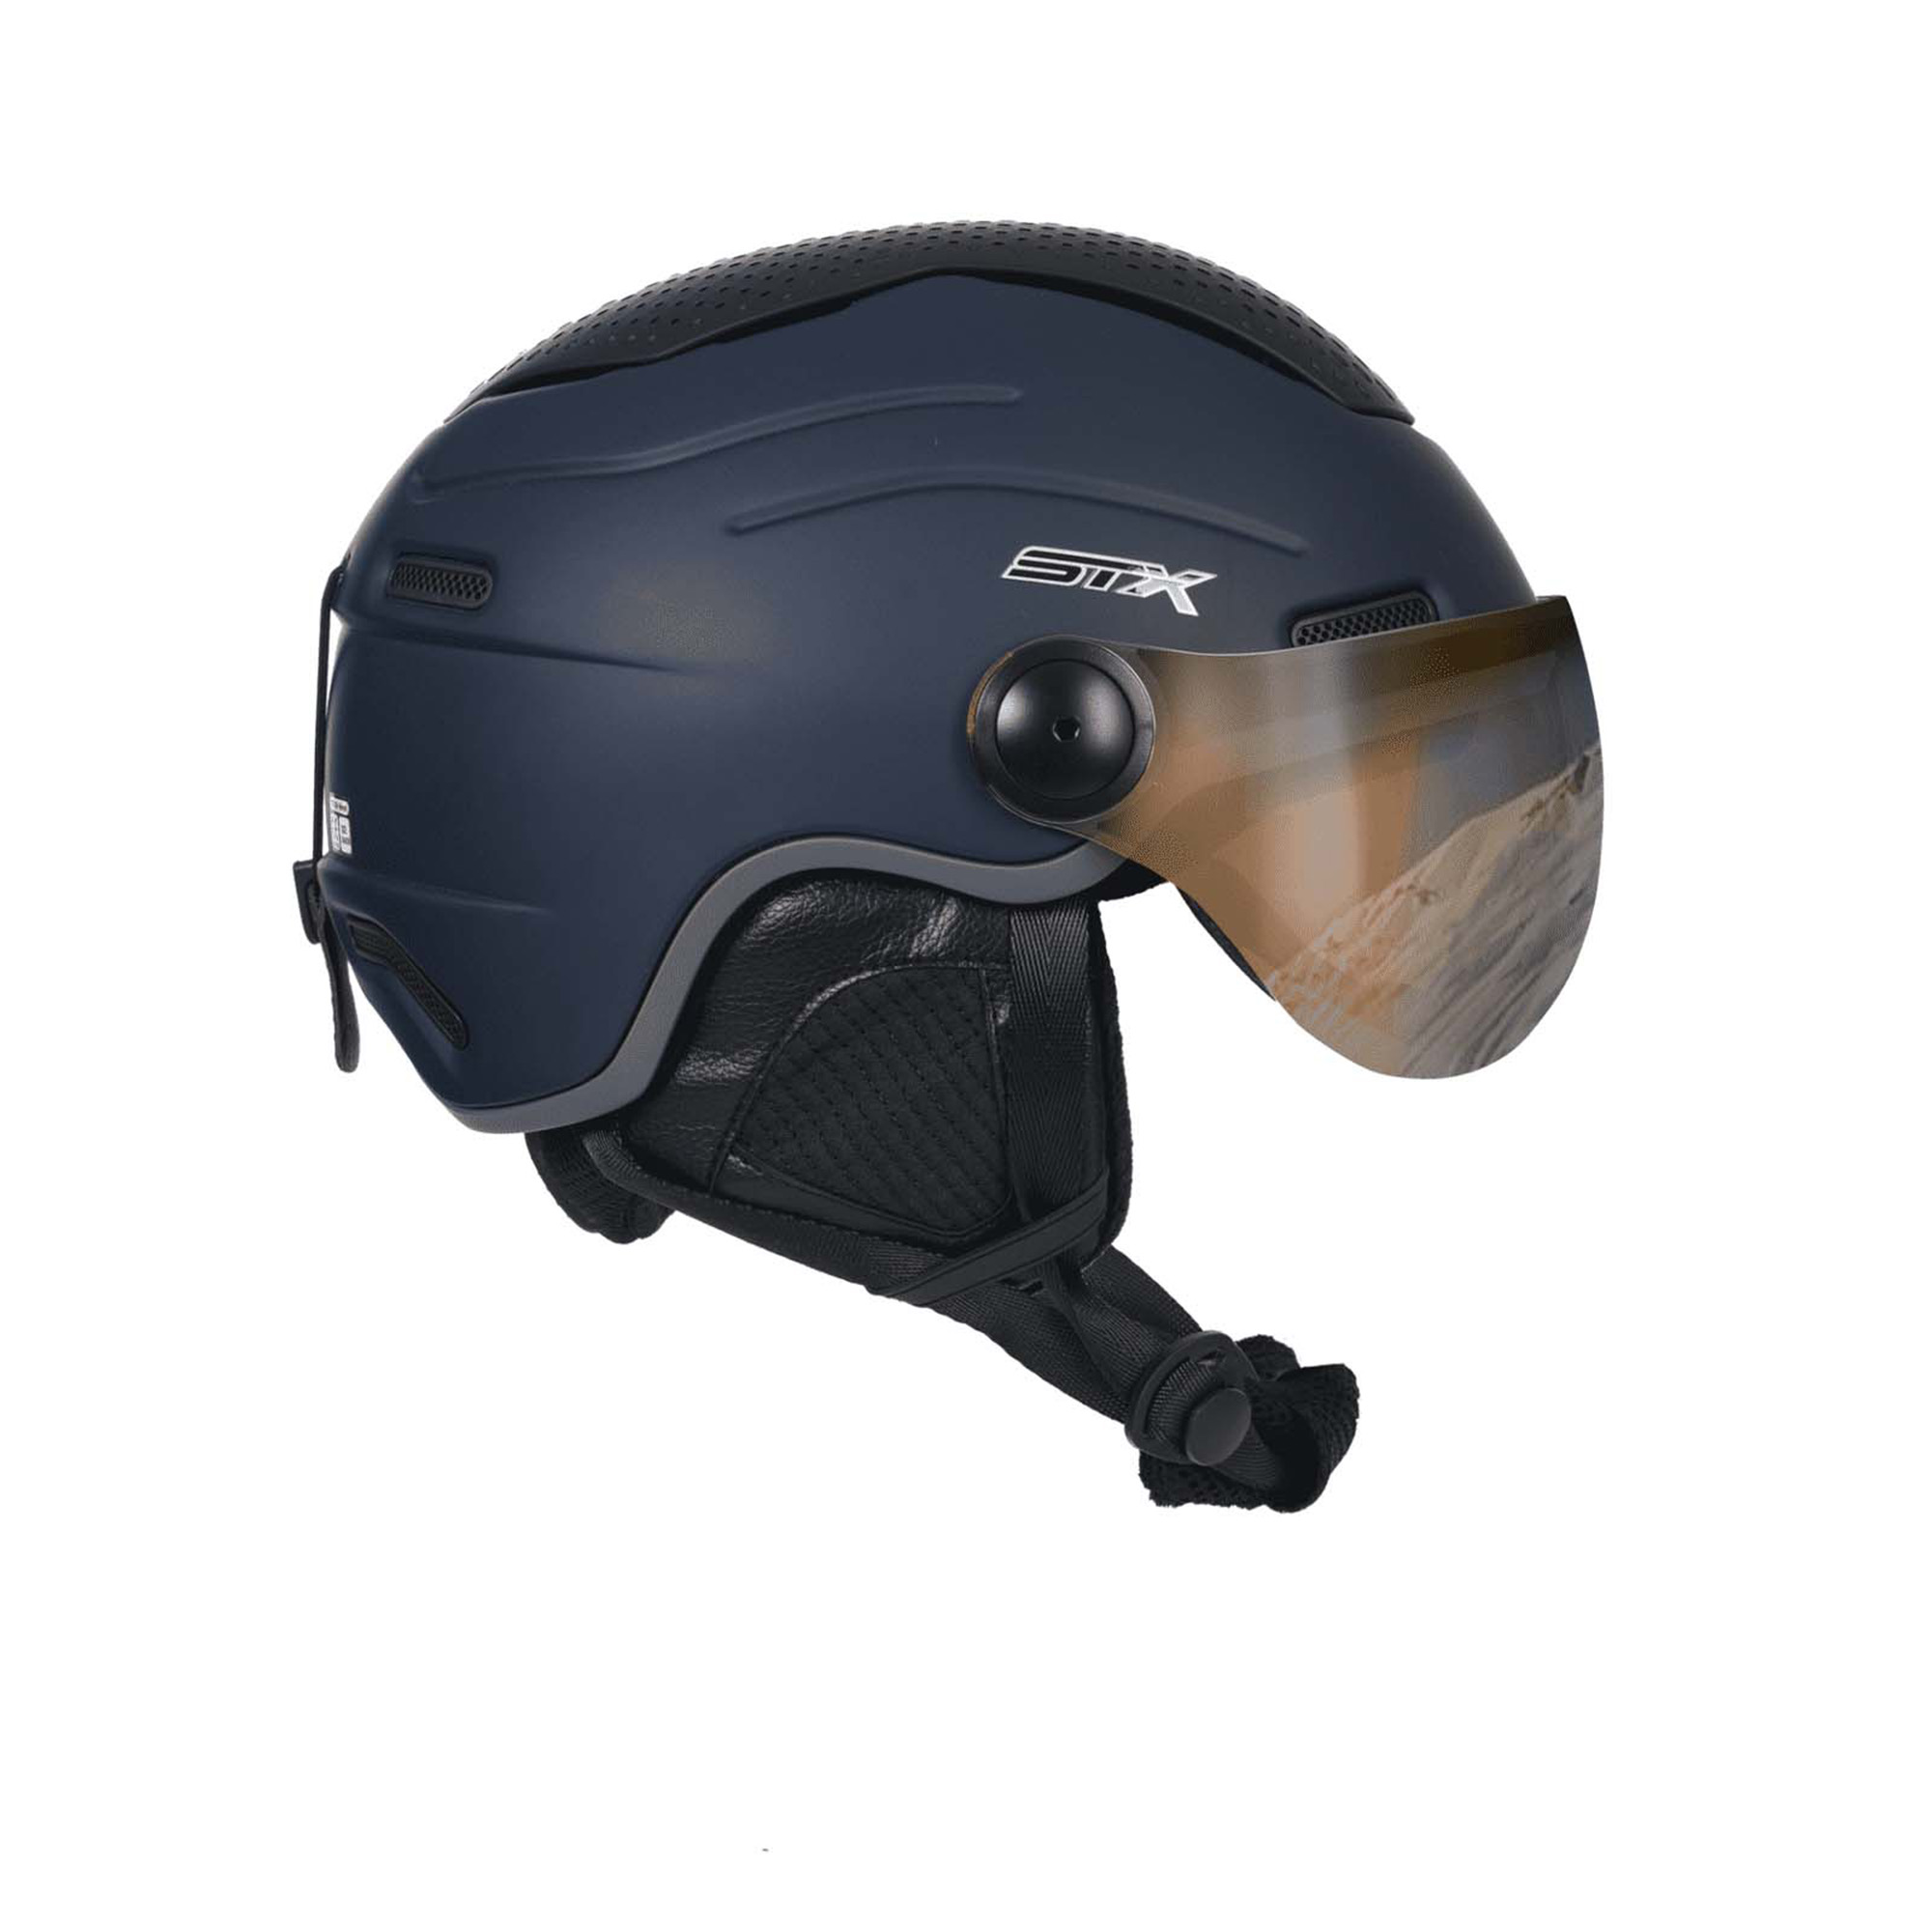 STX Helmet Visor